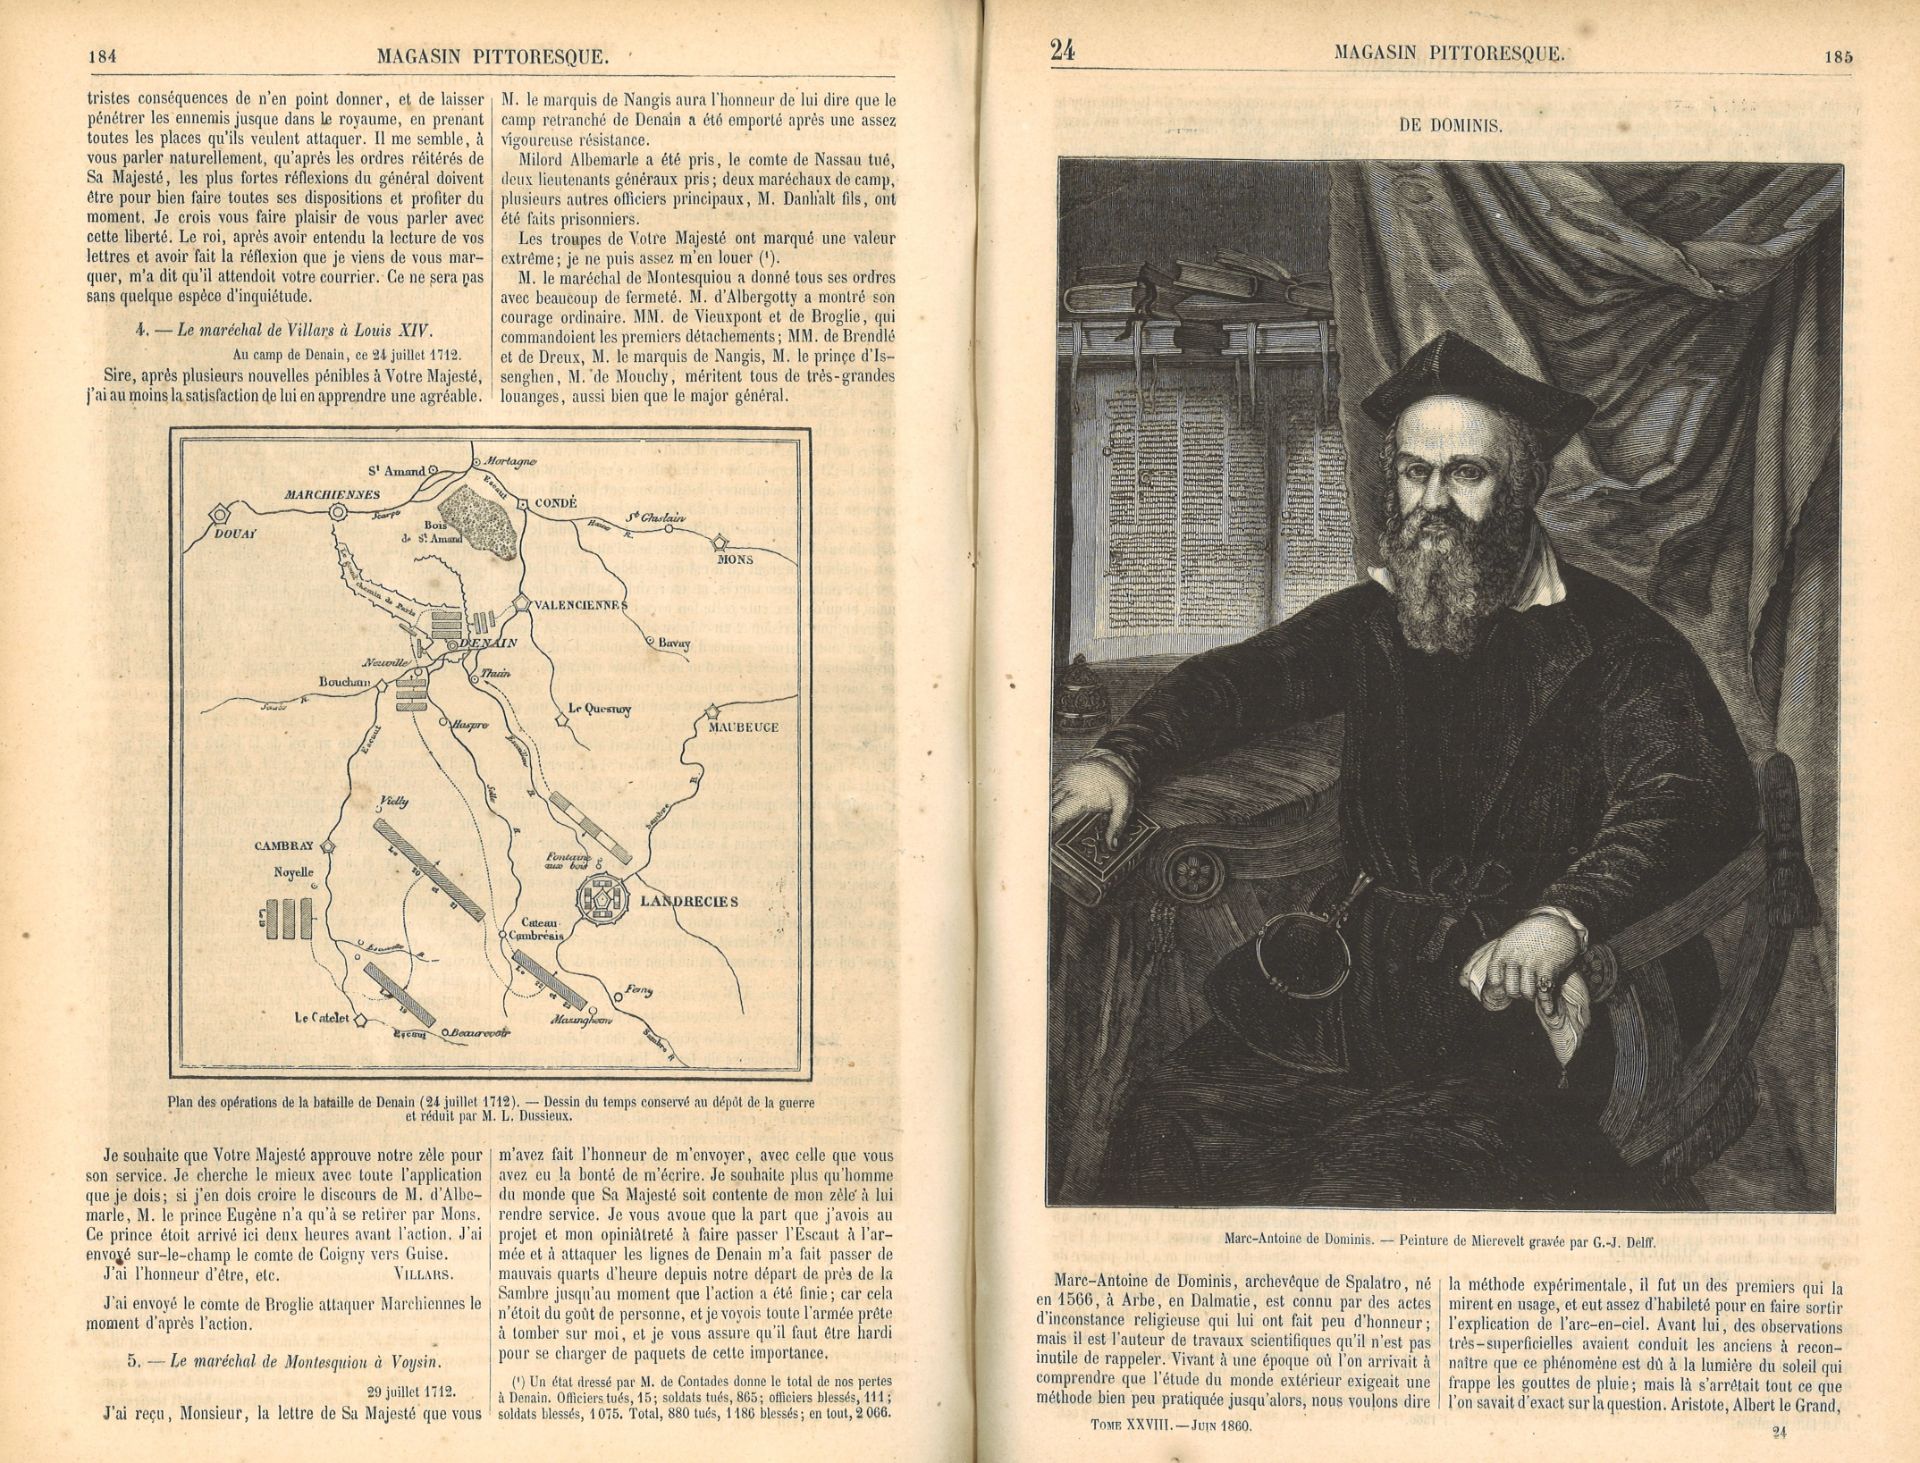 2x Bücher "Le Magasin Pittoresque" 1853 + 1860, Nr. 21 + 28. Mit Gebrauchsspuren - Image 2 of 3